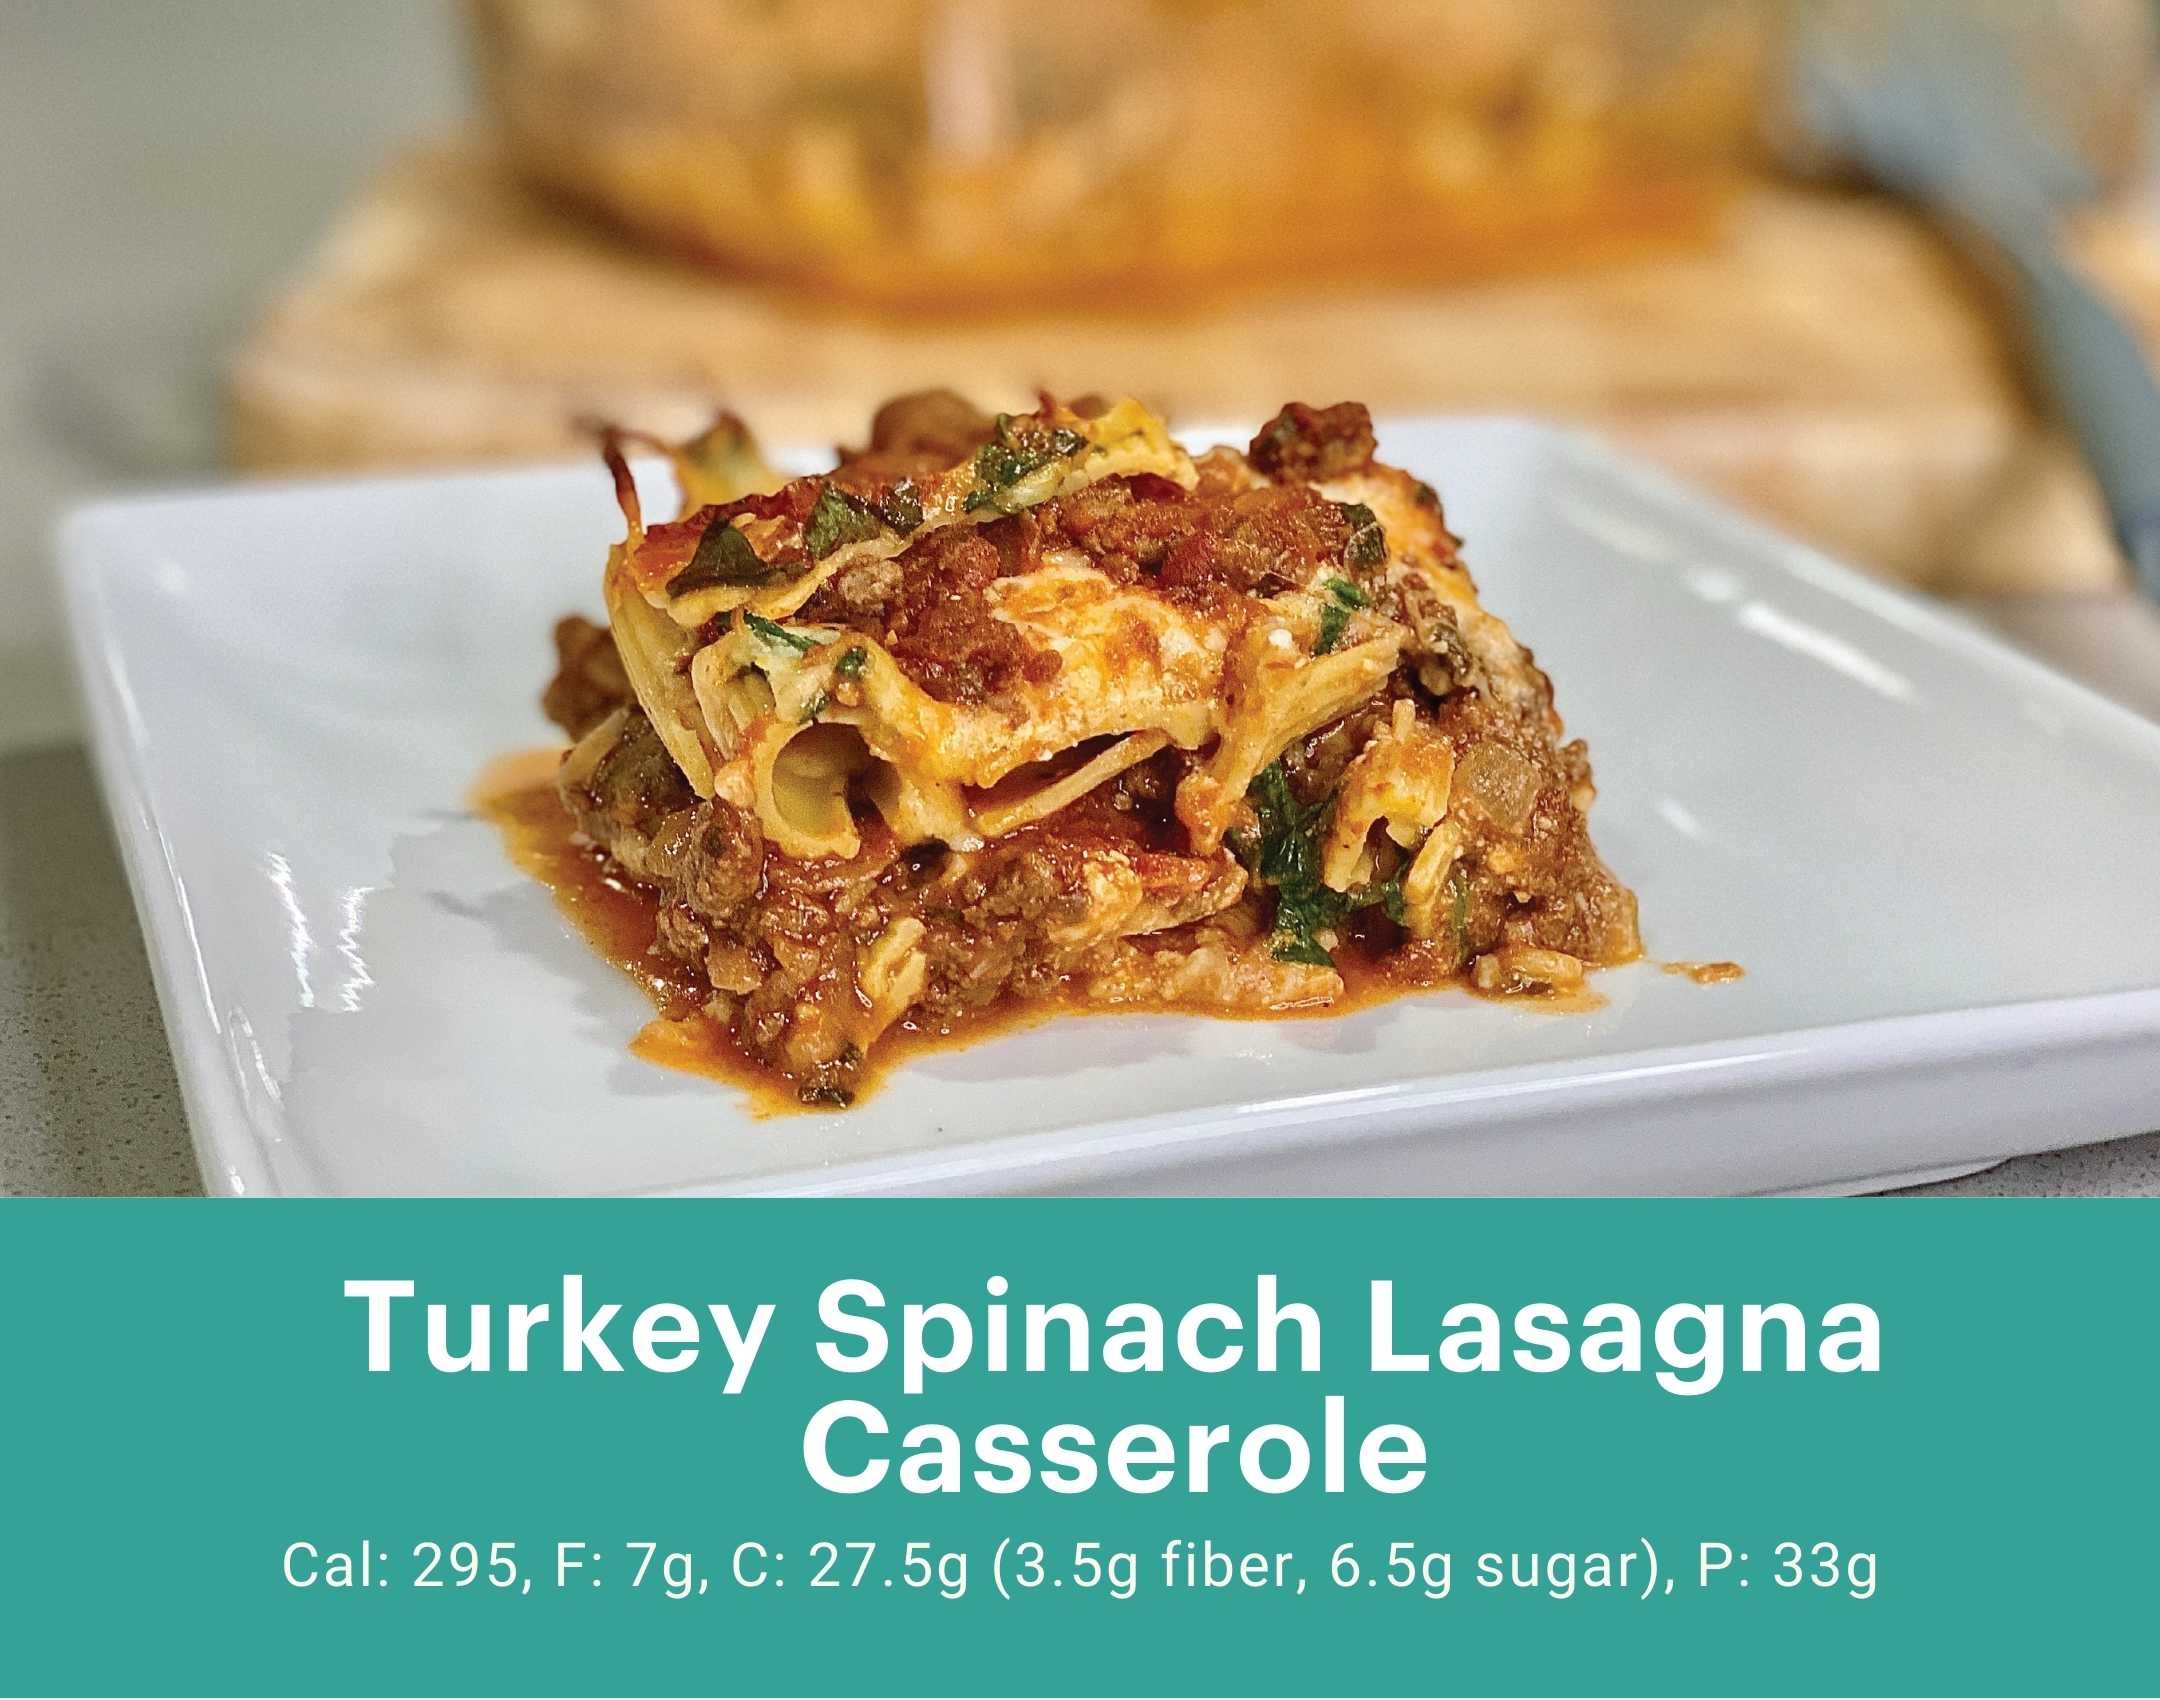 Turkey Spinach Lasagna Casserole.jpg